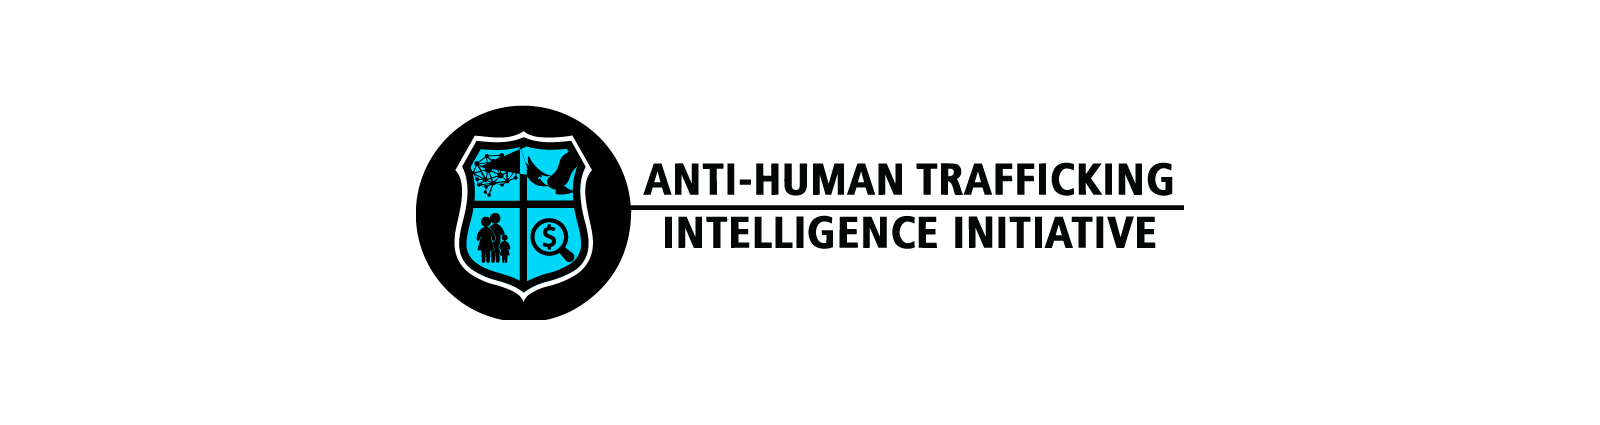 Anti Human Trafficking Intelligence Initiative